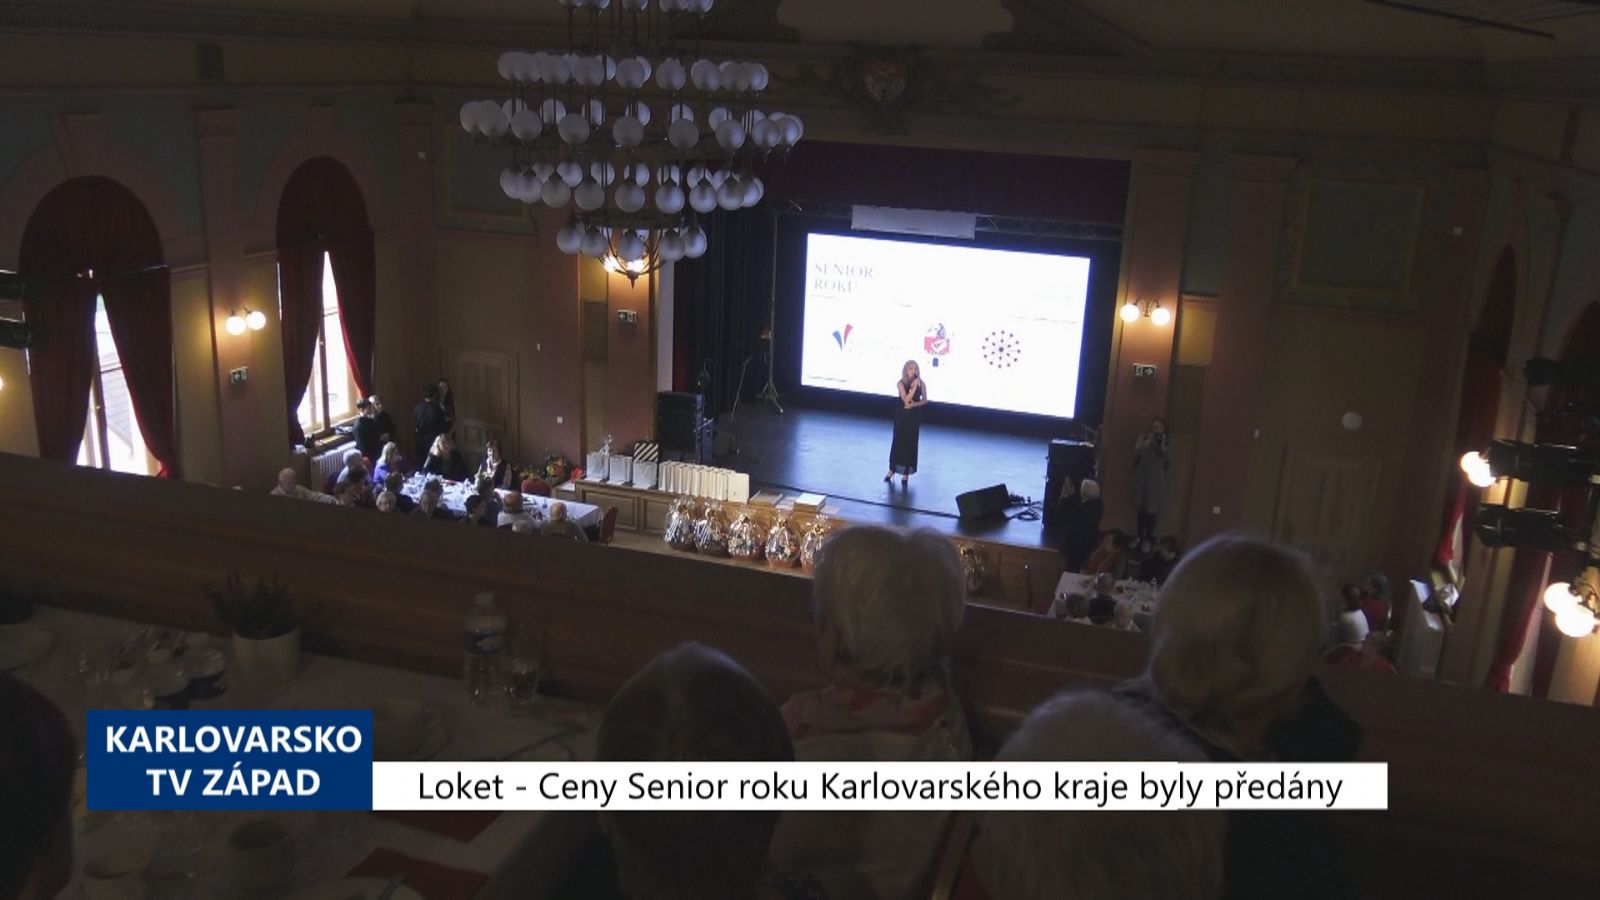 Loket: Ceny Senior roku Karlovarského kraje byly předány (TV Západ)